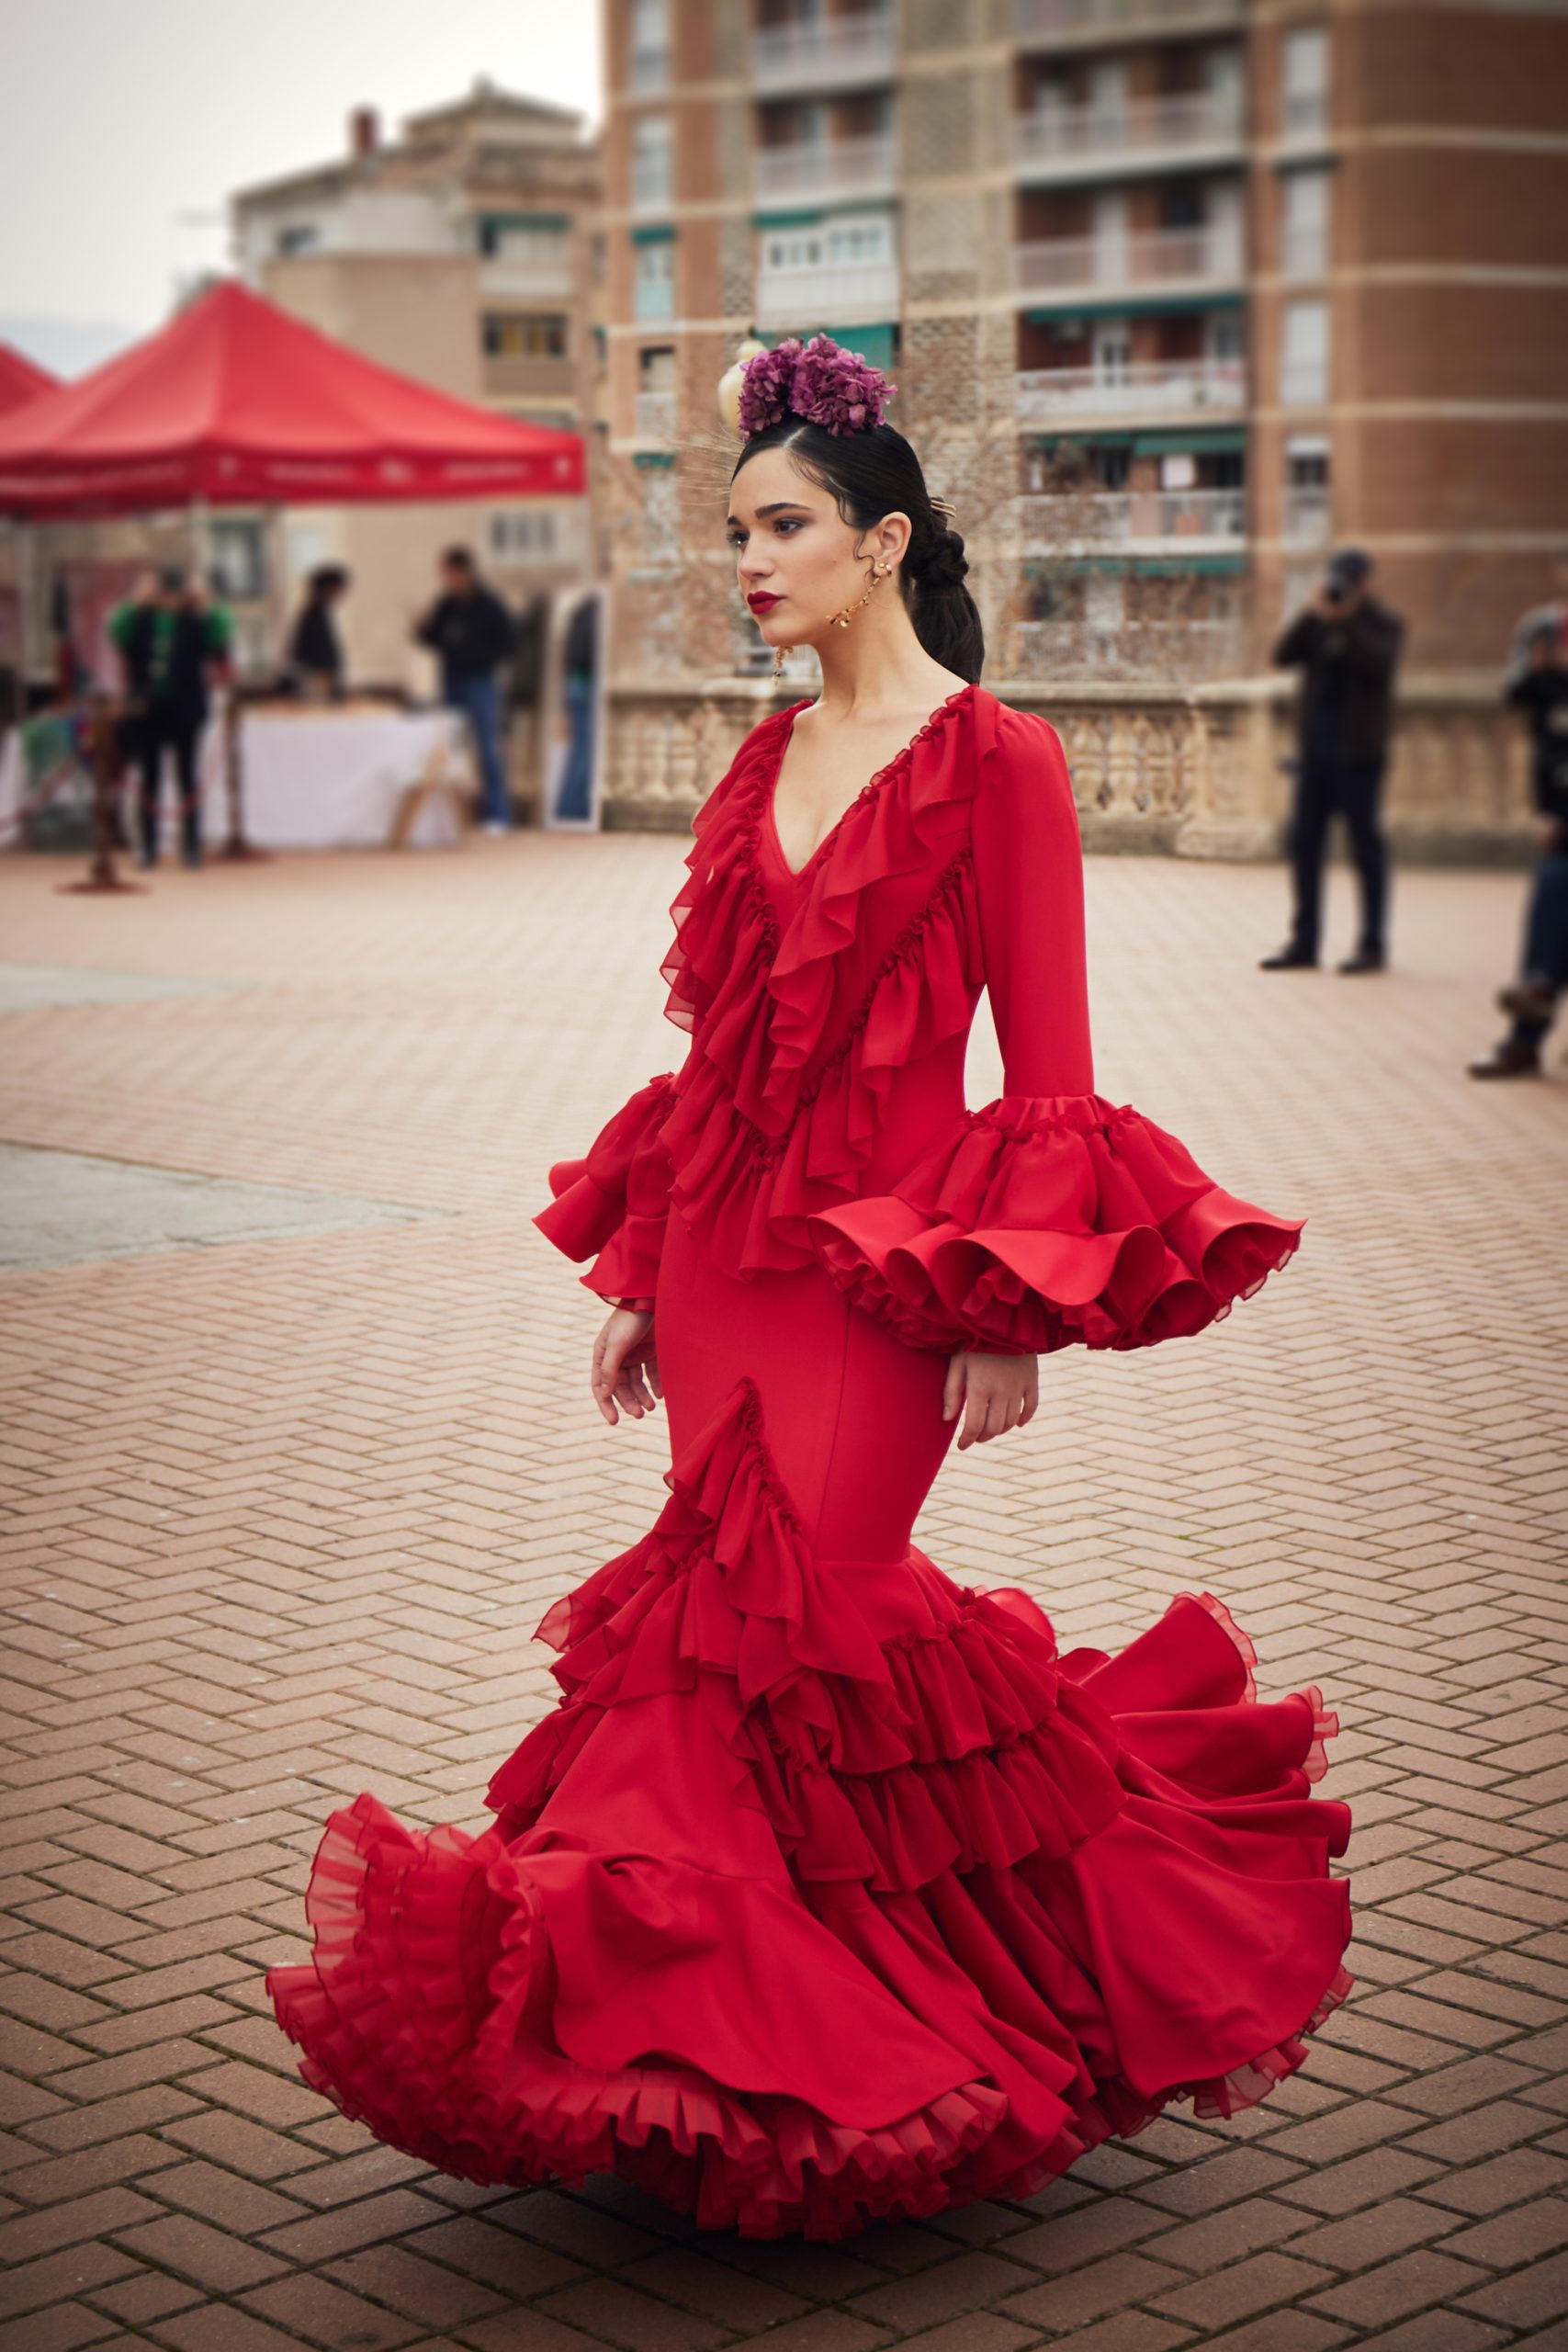 sobre apuntalar A nueve Vestido flamenca rojo volantes en gasa – Hita y Arcos 2023 cita previa  685531861